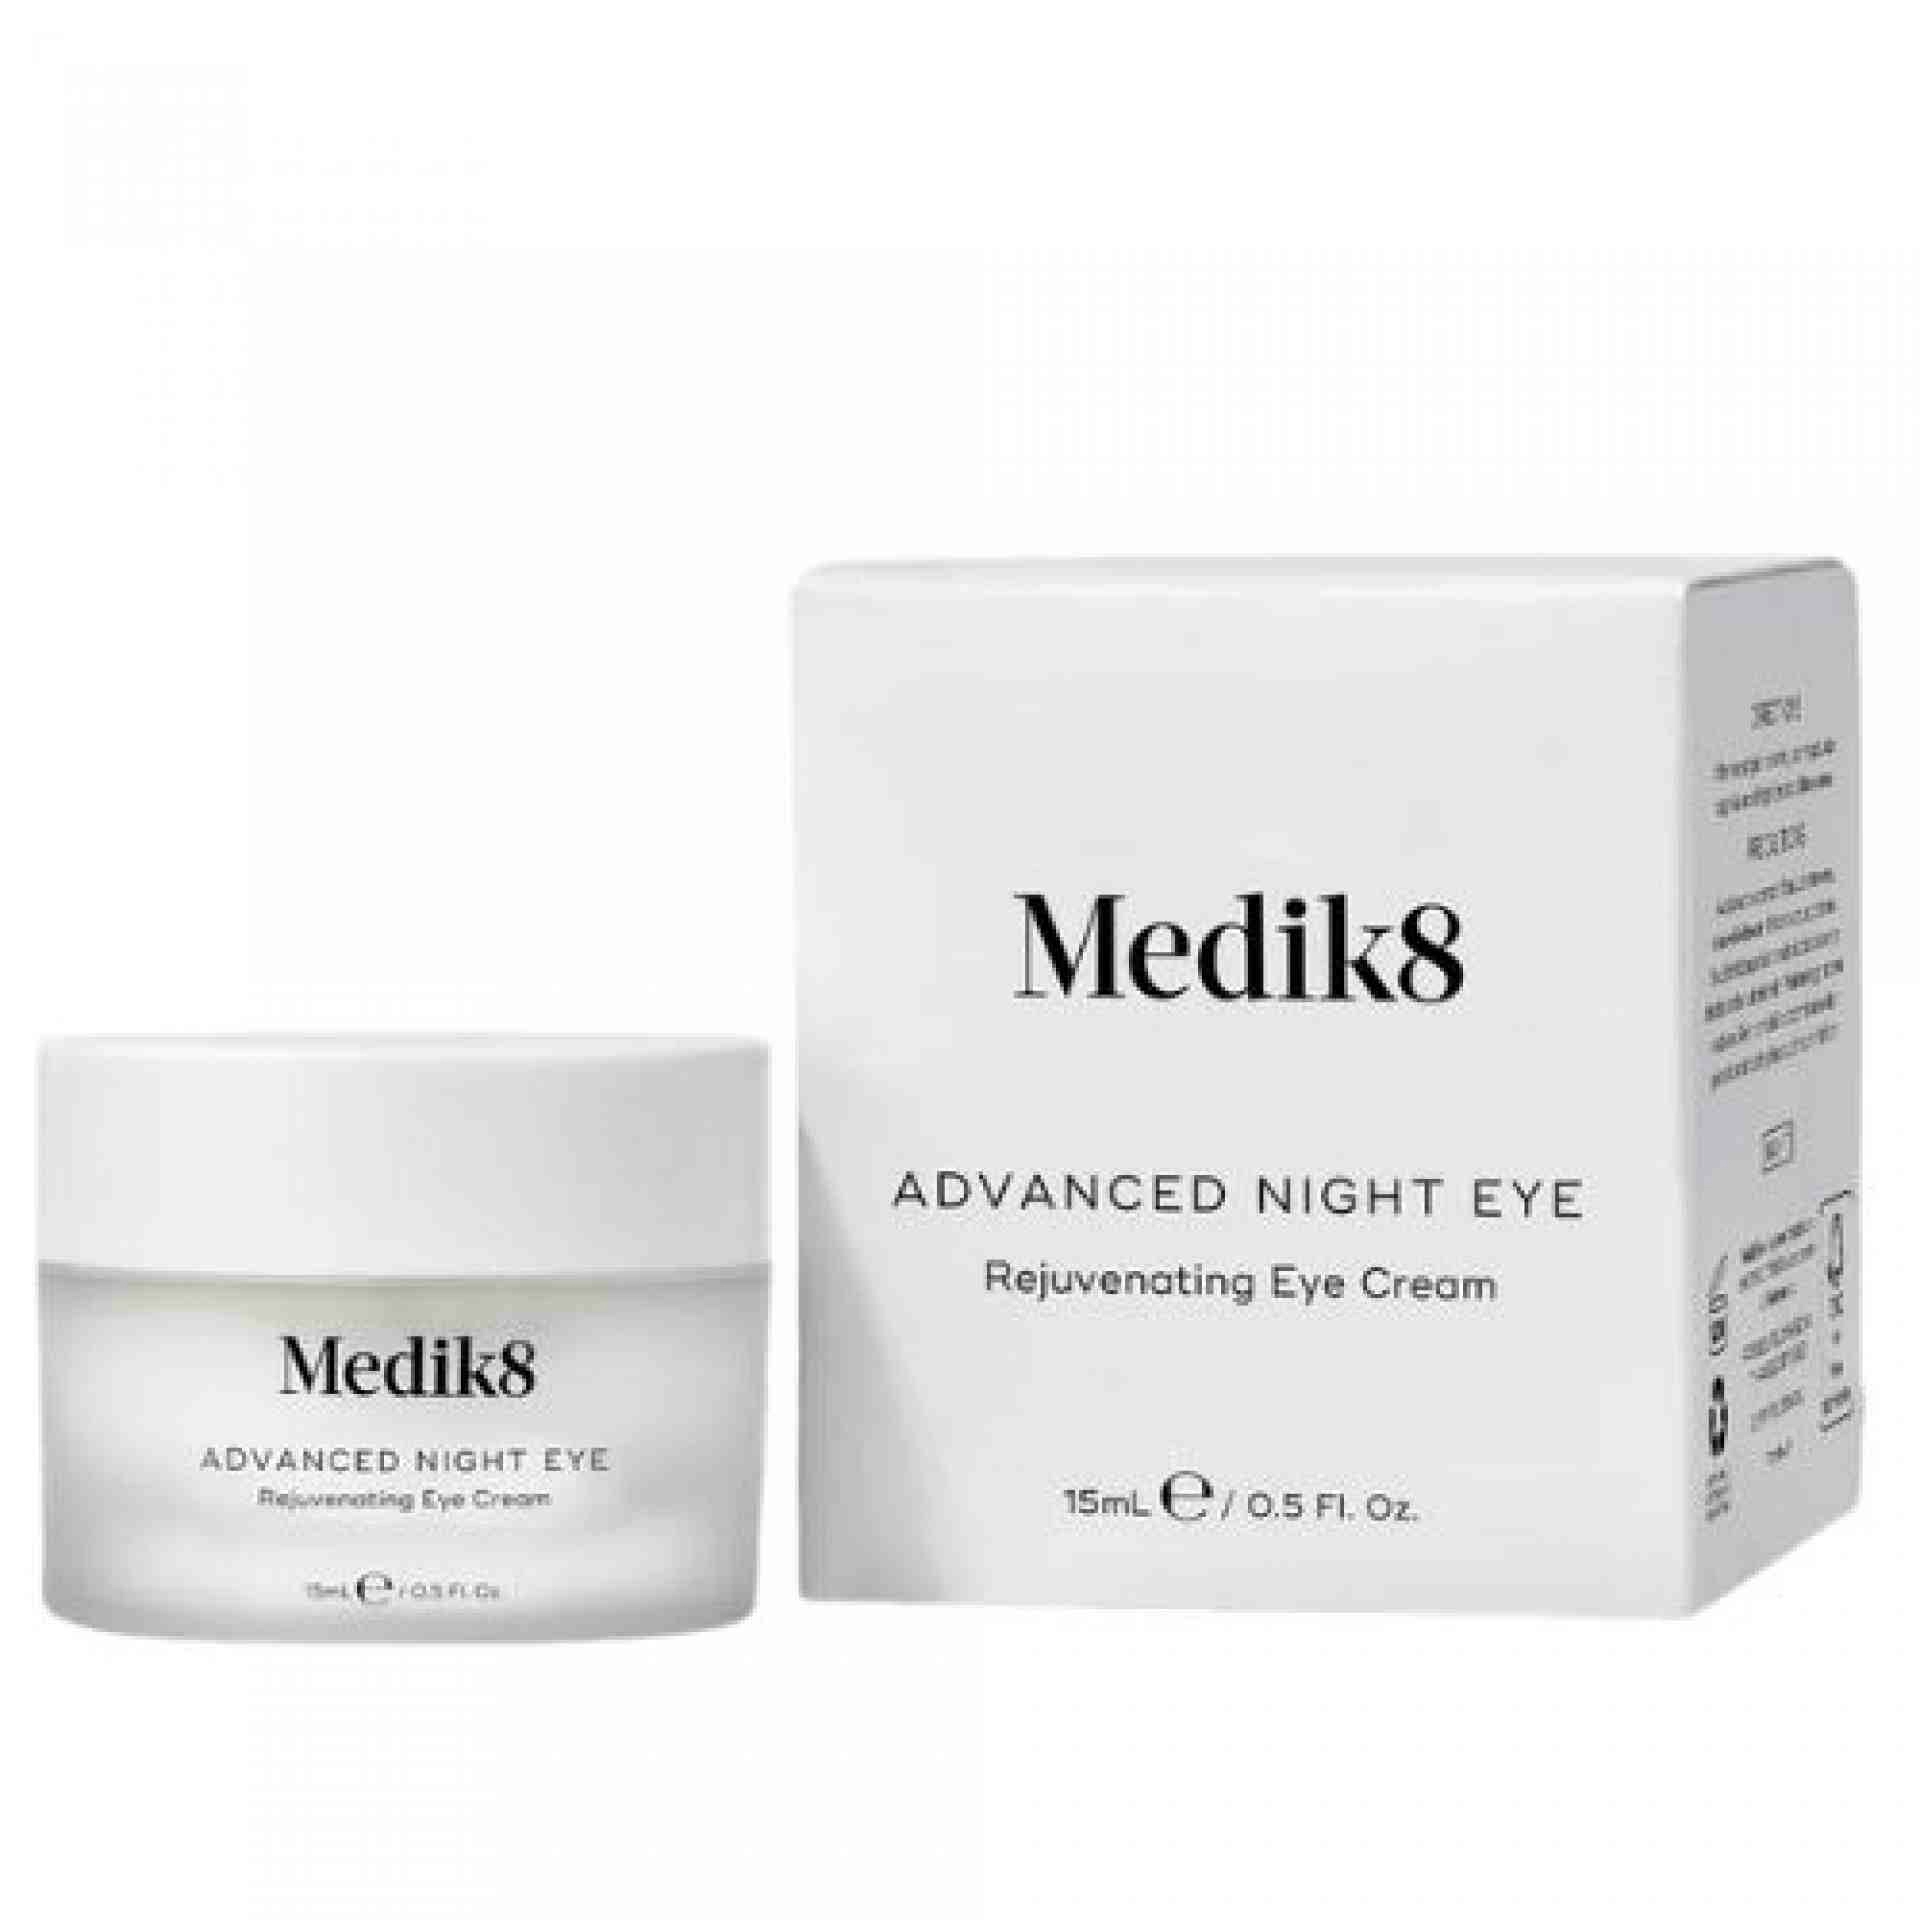 Advanced Night Eye | Crema reparadora de ojos 15ml - Contorno de ojos - Medik8 ®